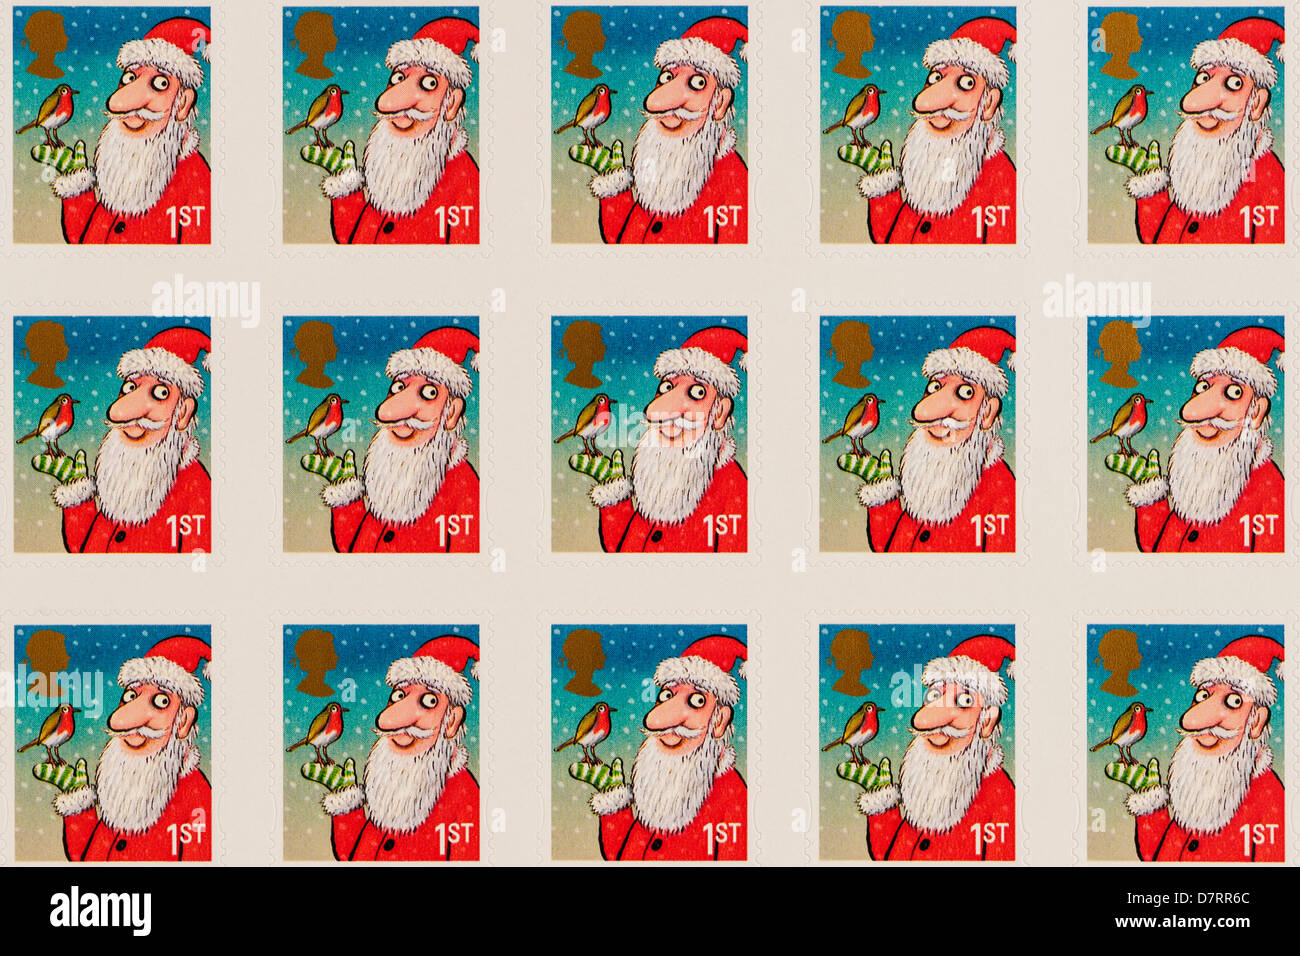 Royal Mail de fête de 1ère classe des timbres de Noël Banque D'Images